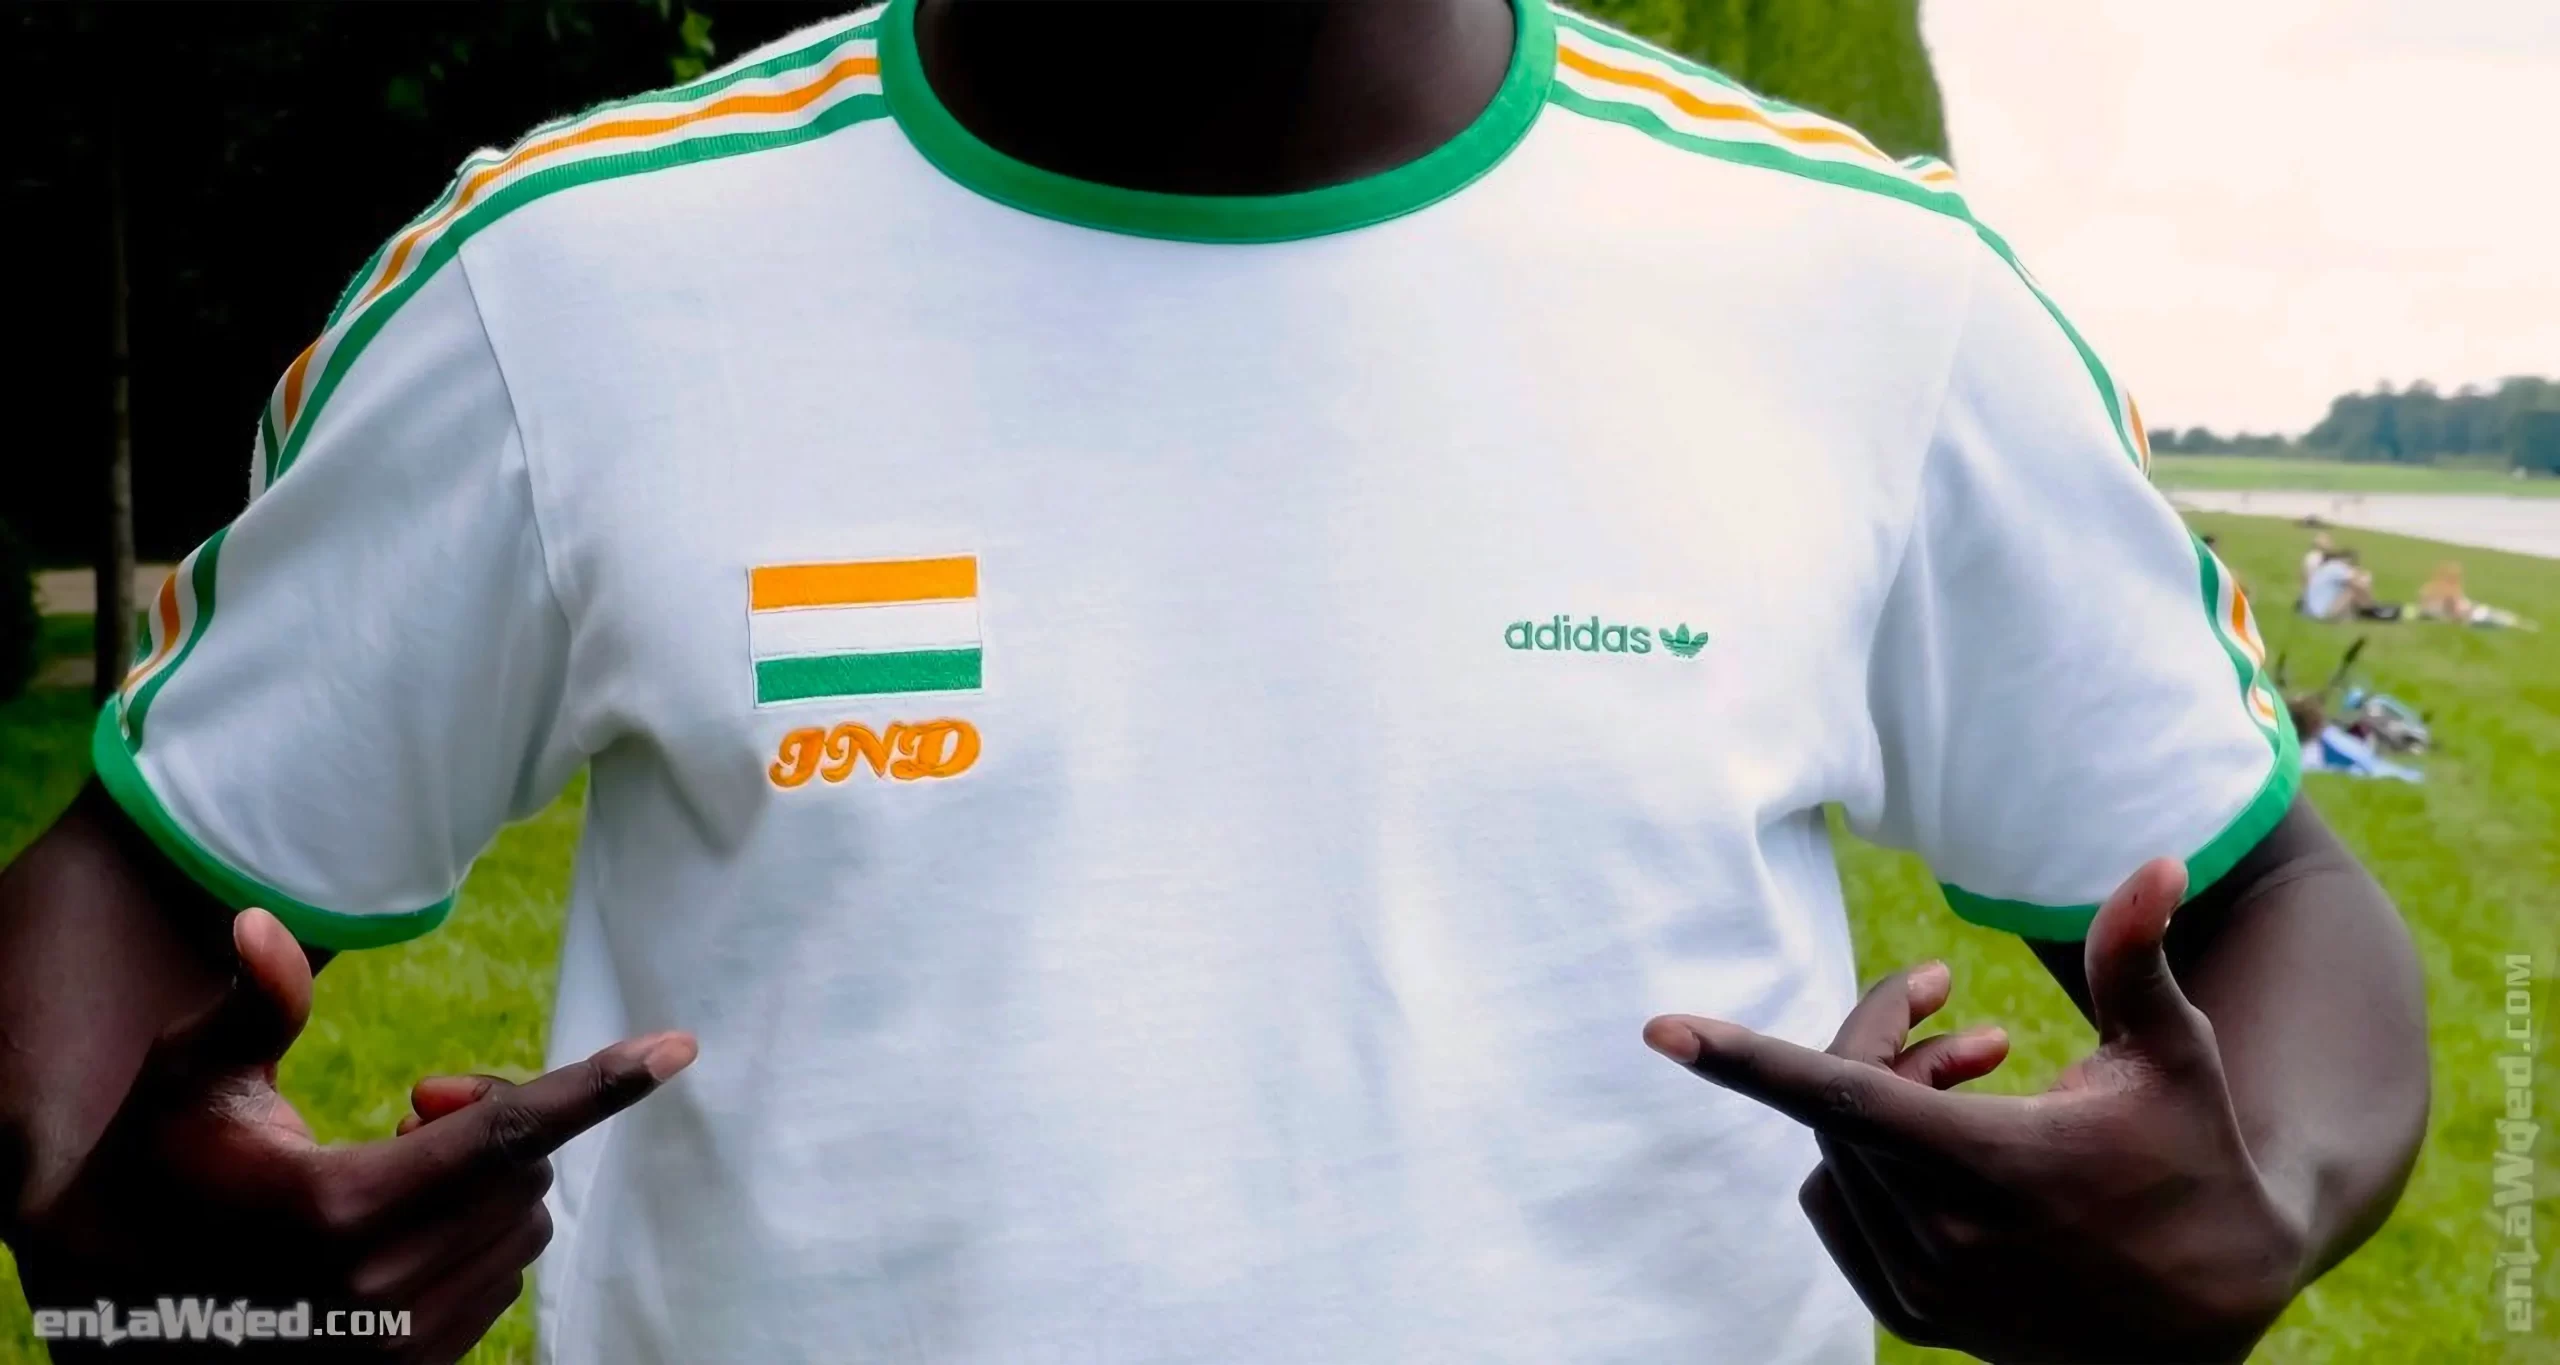 Men’s 2005 India T-Shirt by Adidas Originals: Proven (EnLawded.com file #lmcfvxj4rdn78bsdb)